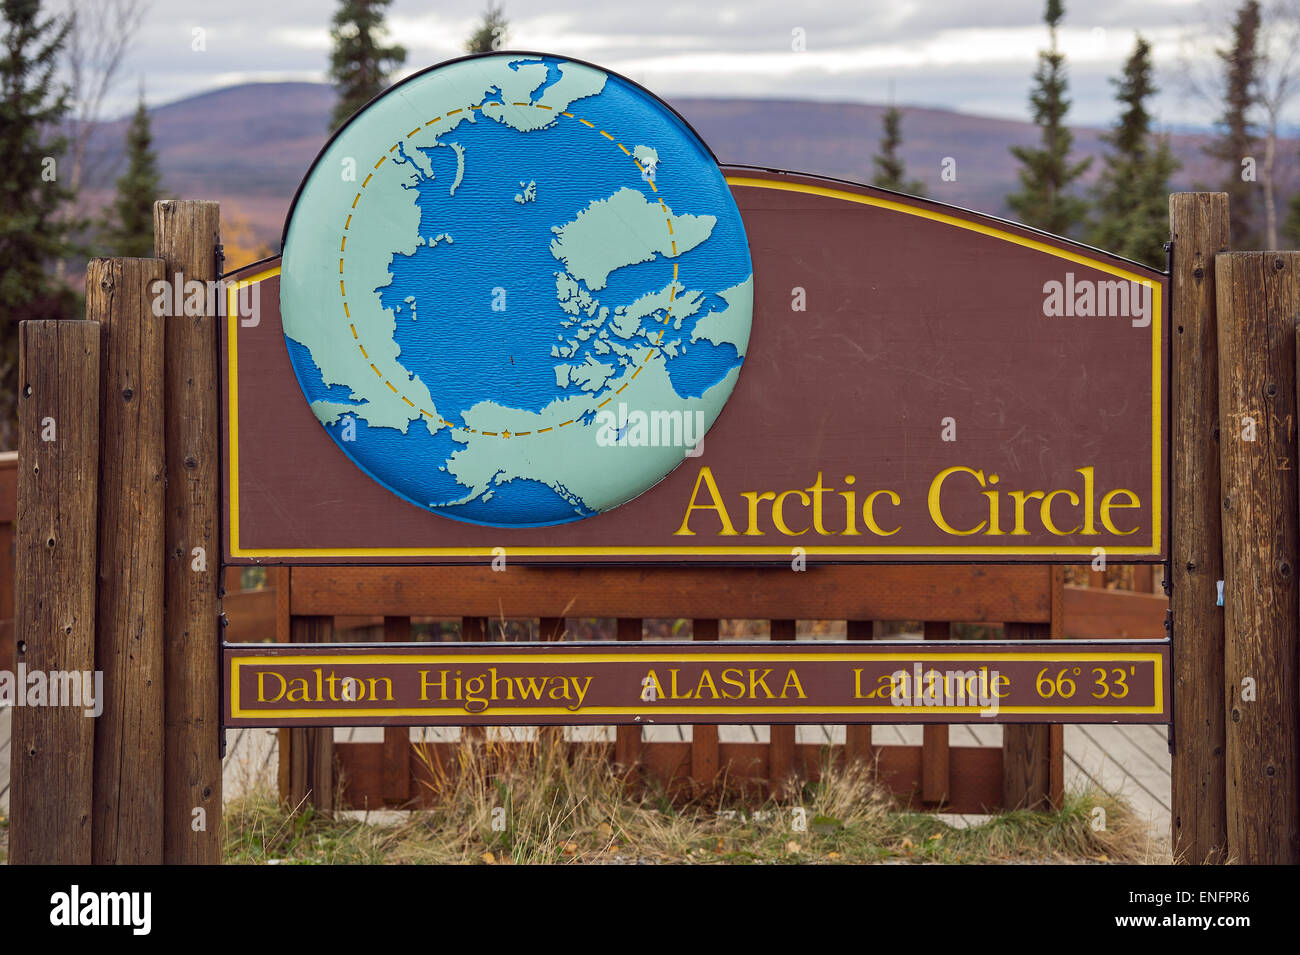 Arctic Circle, Dalton Highway, arctic Alaska, Alaska, USA Stock Photo